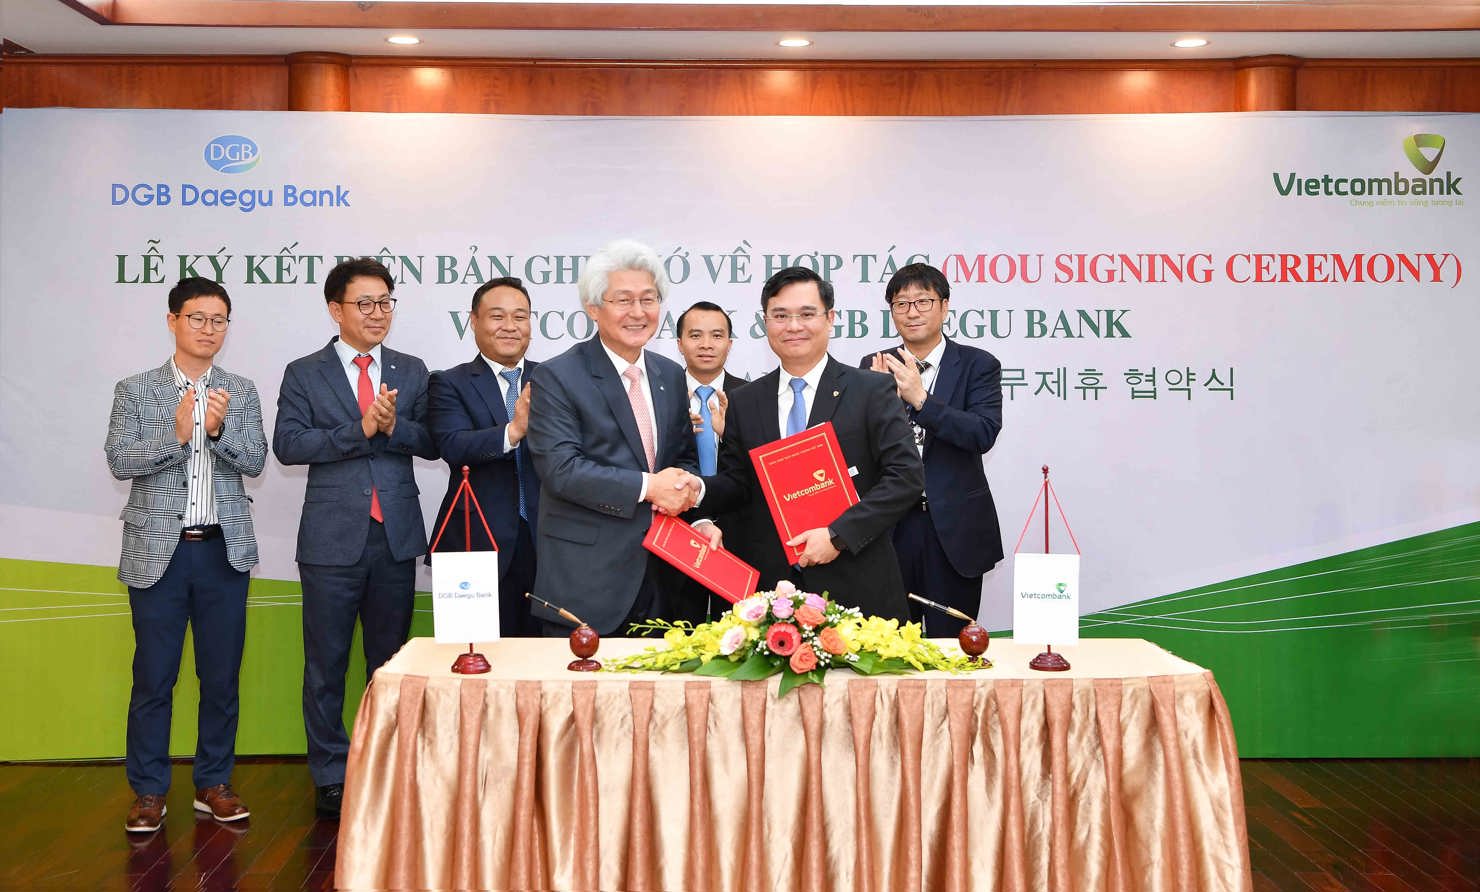 Đại diện Vietcombank và DGB Daegu Bank ký kết biên bản ghi nhớ.